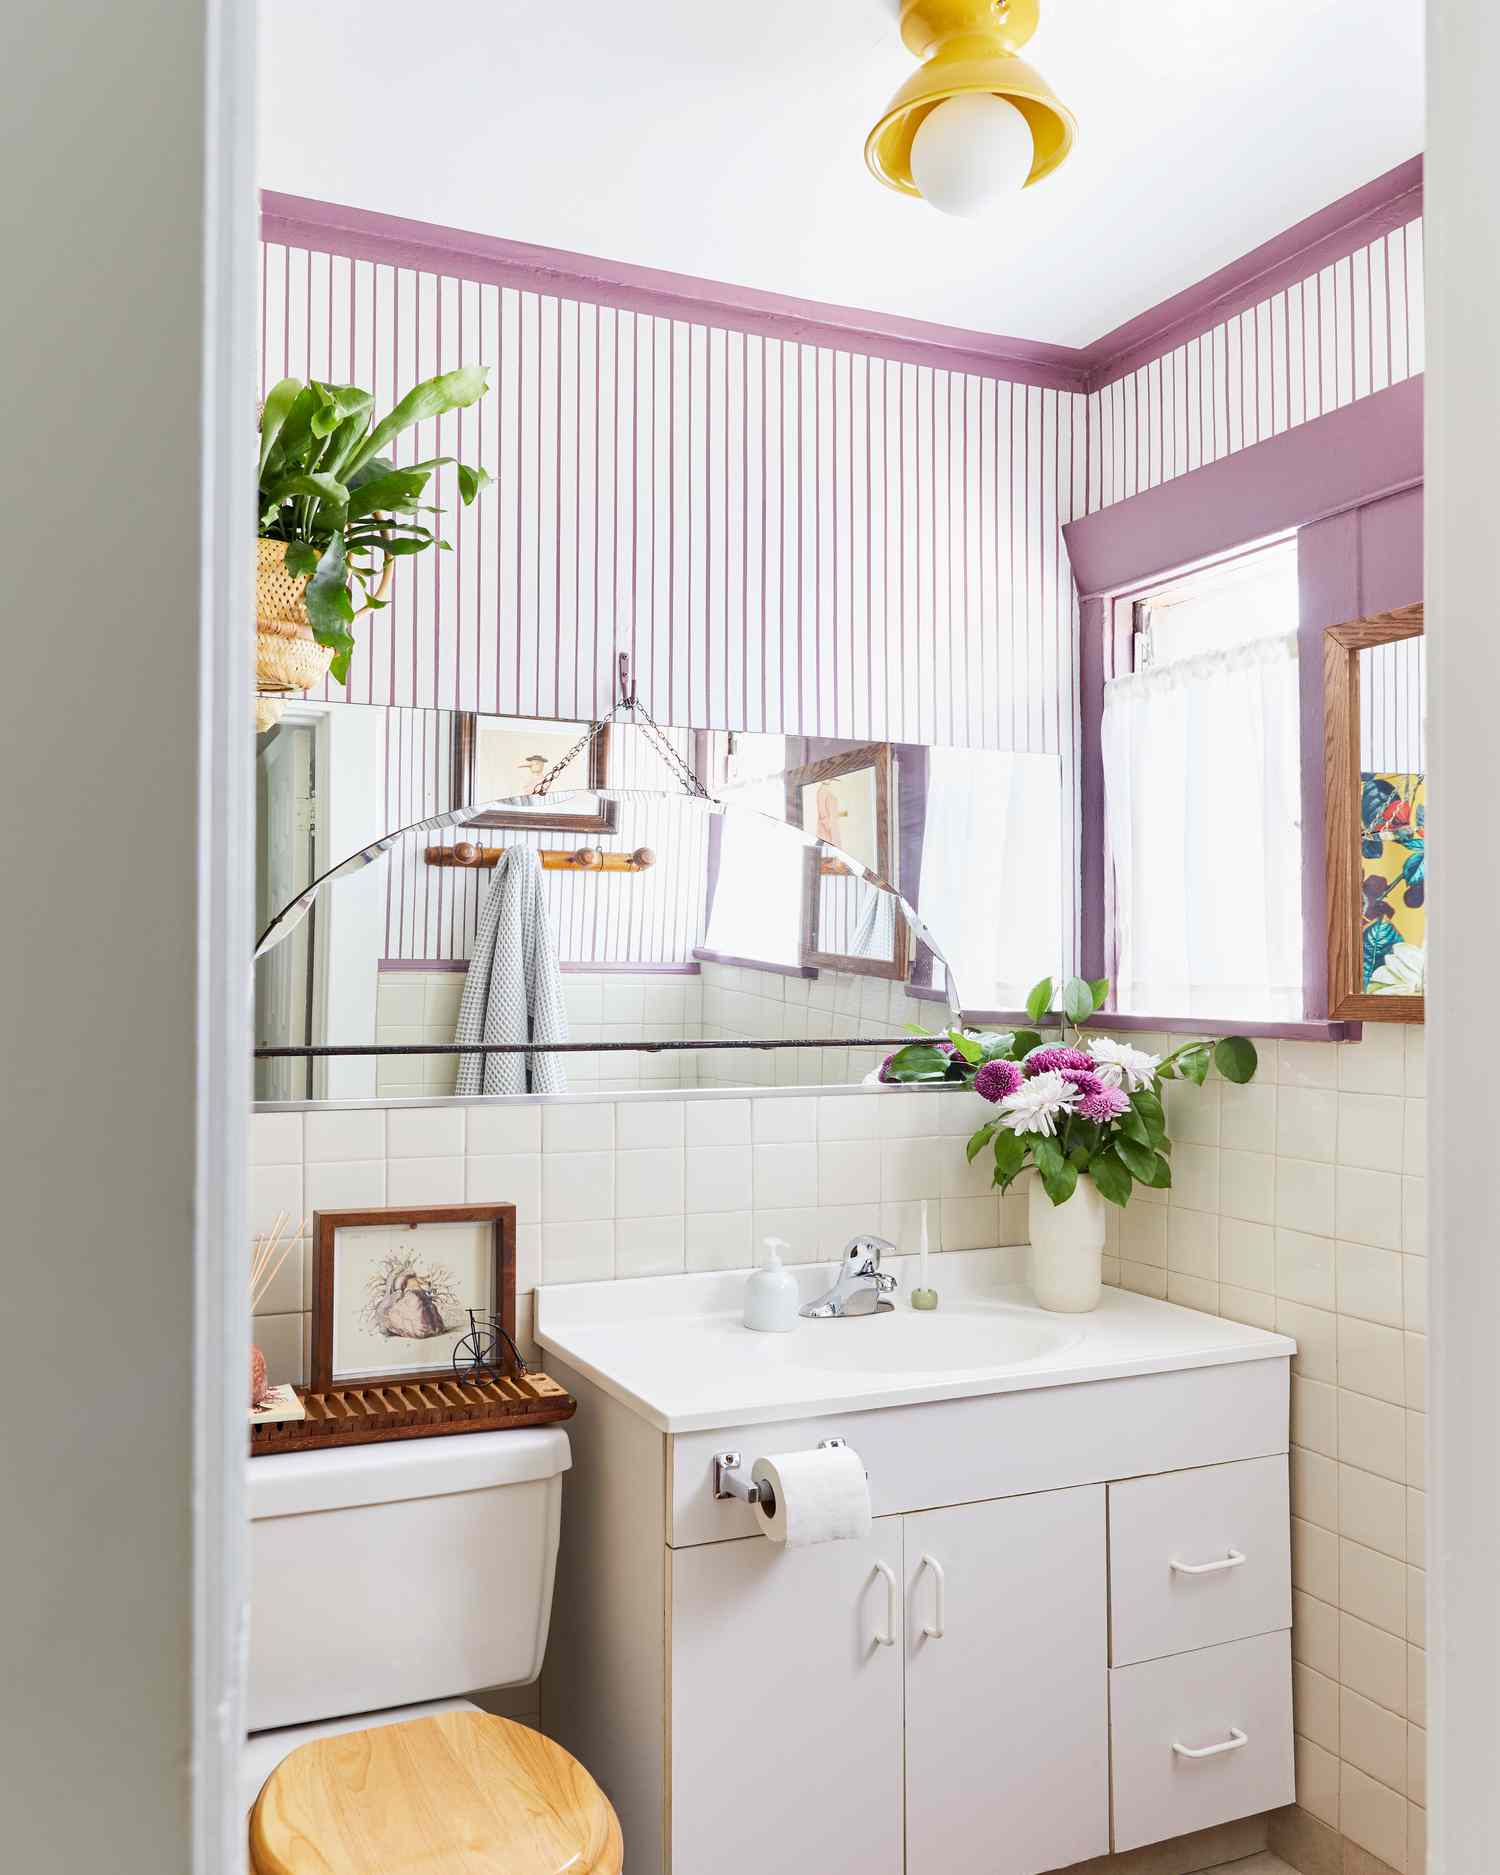 Banheiro pequeno com listras roxas e acabamento.